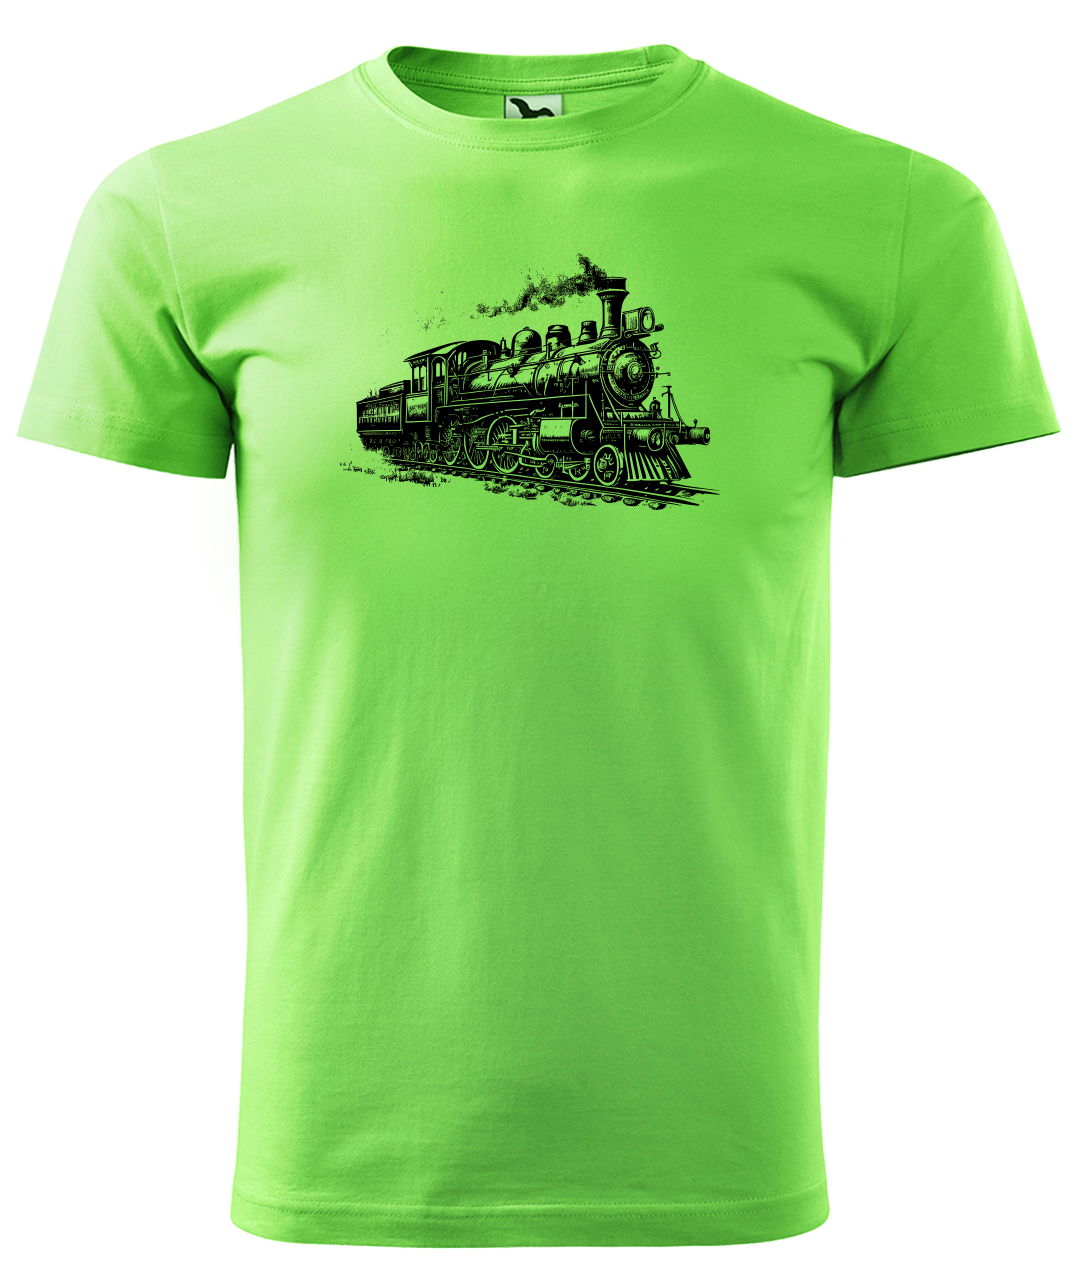 Dětské tričko s vlakem - Stará lokomotiva Velikost: 8 let / 134 cm, Barva: Apple Green (92)